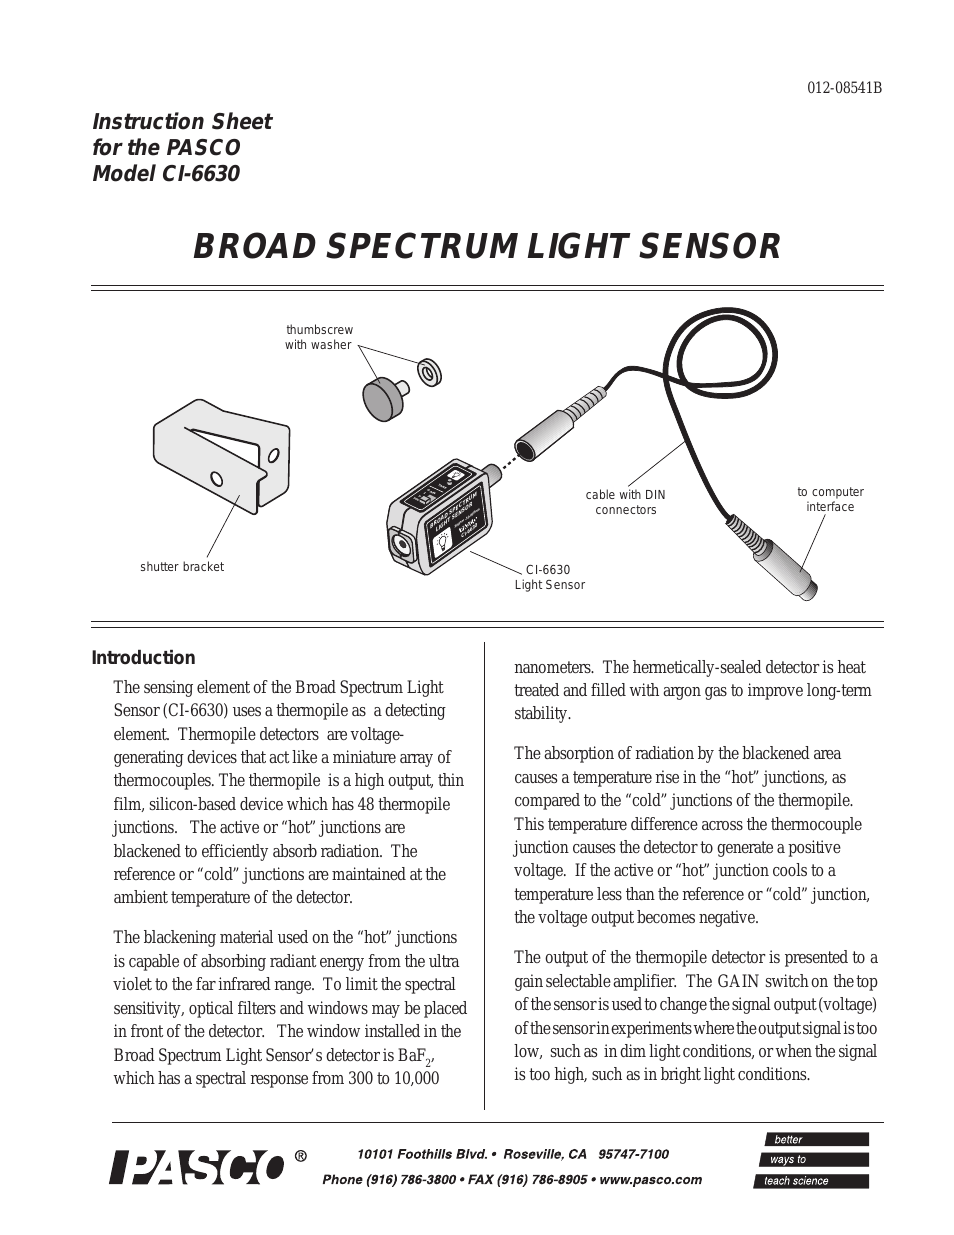 CI-6630 BROAD SPECTRUM LIGHT SENSOR